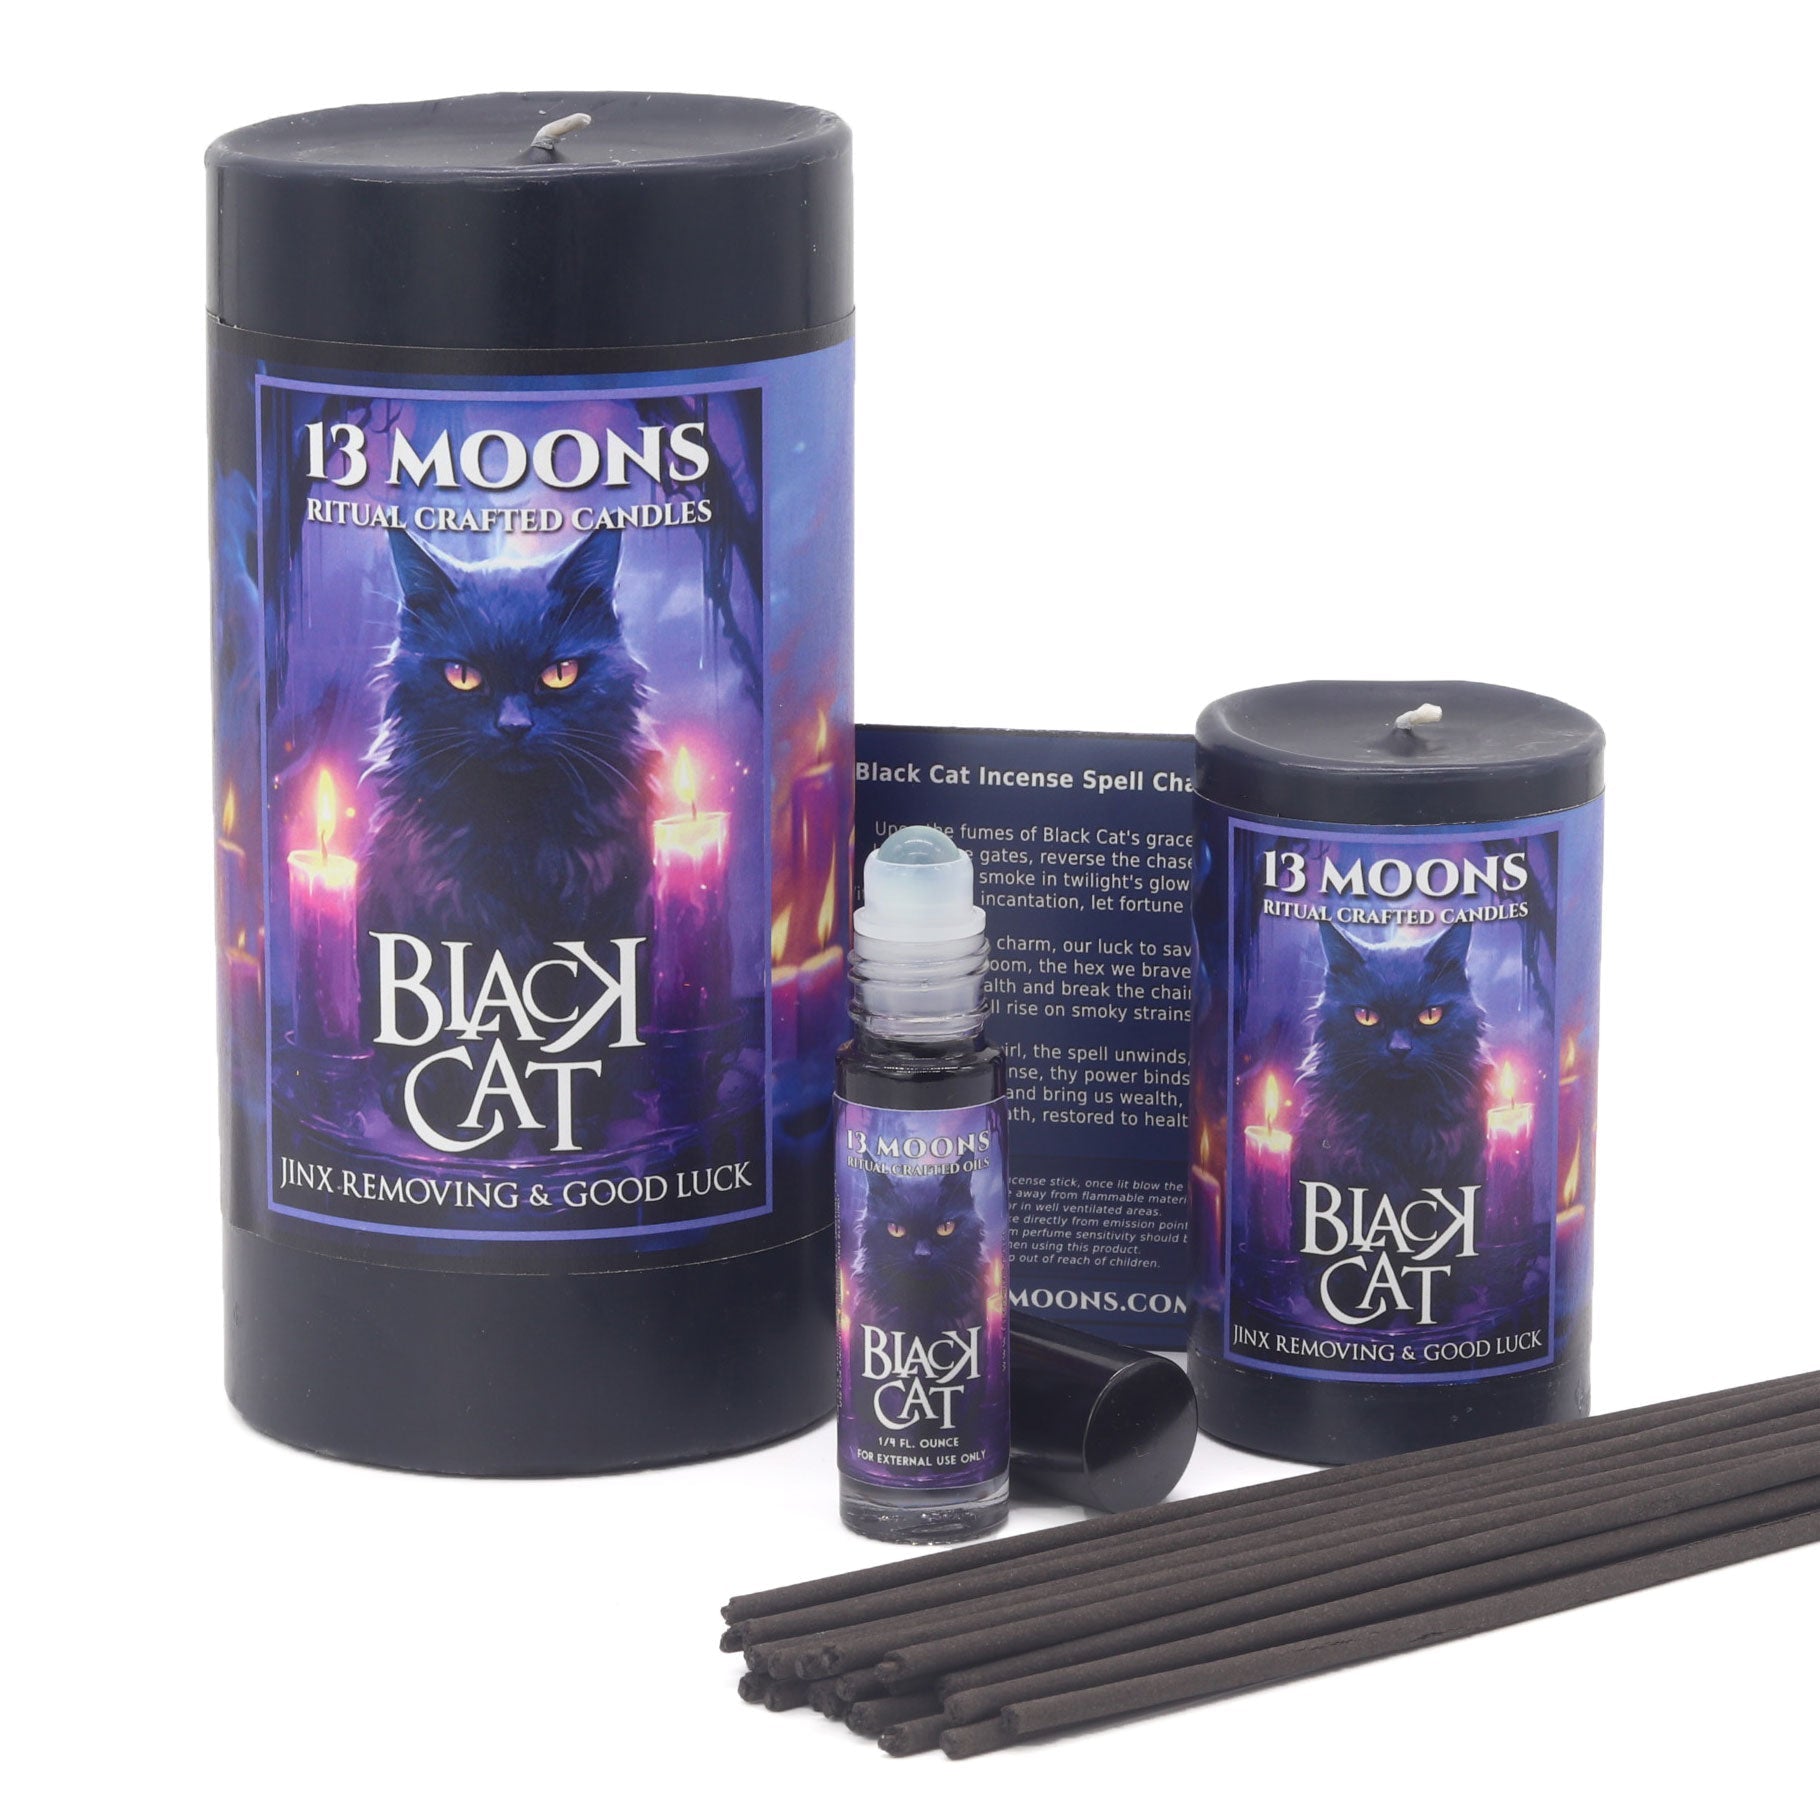 Black Cat Incense - 13 Moons